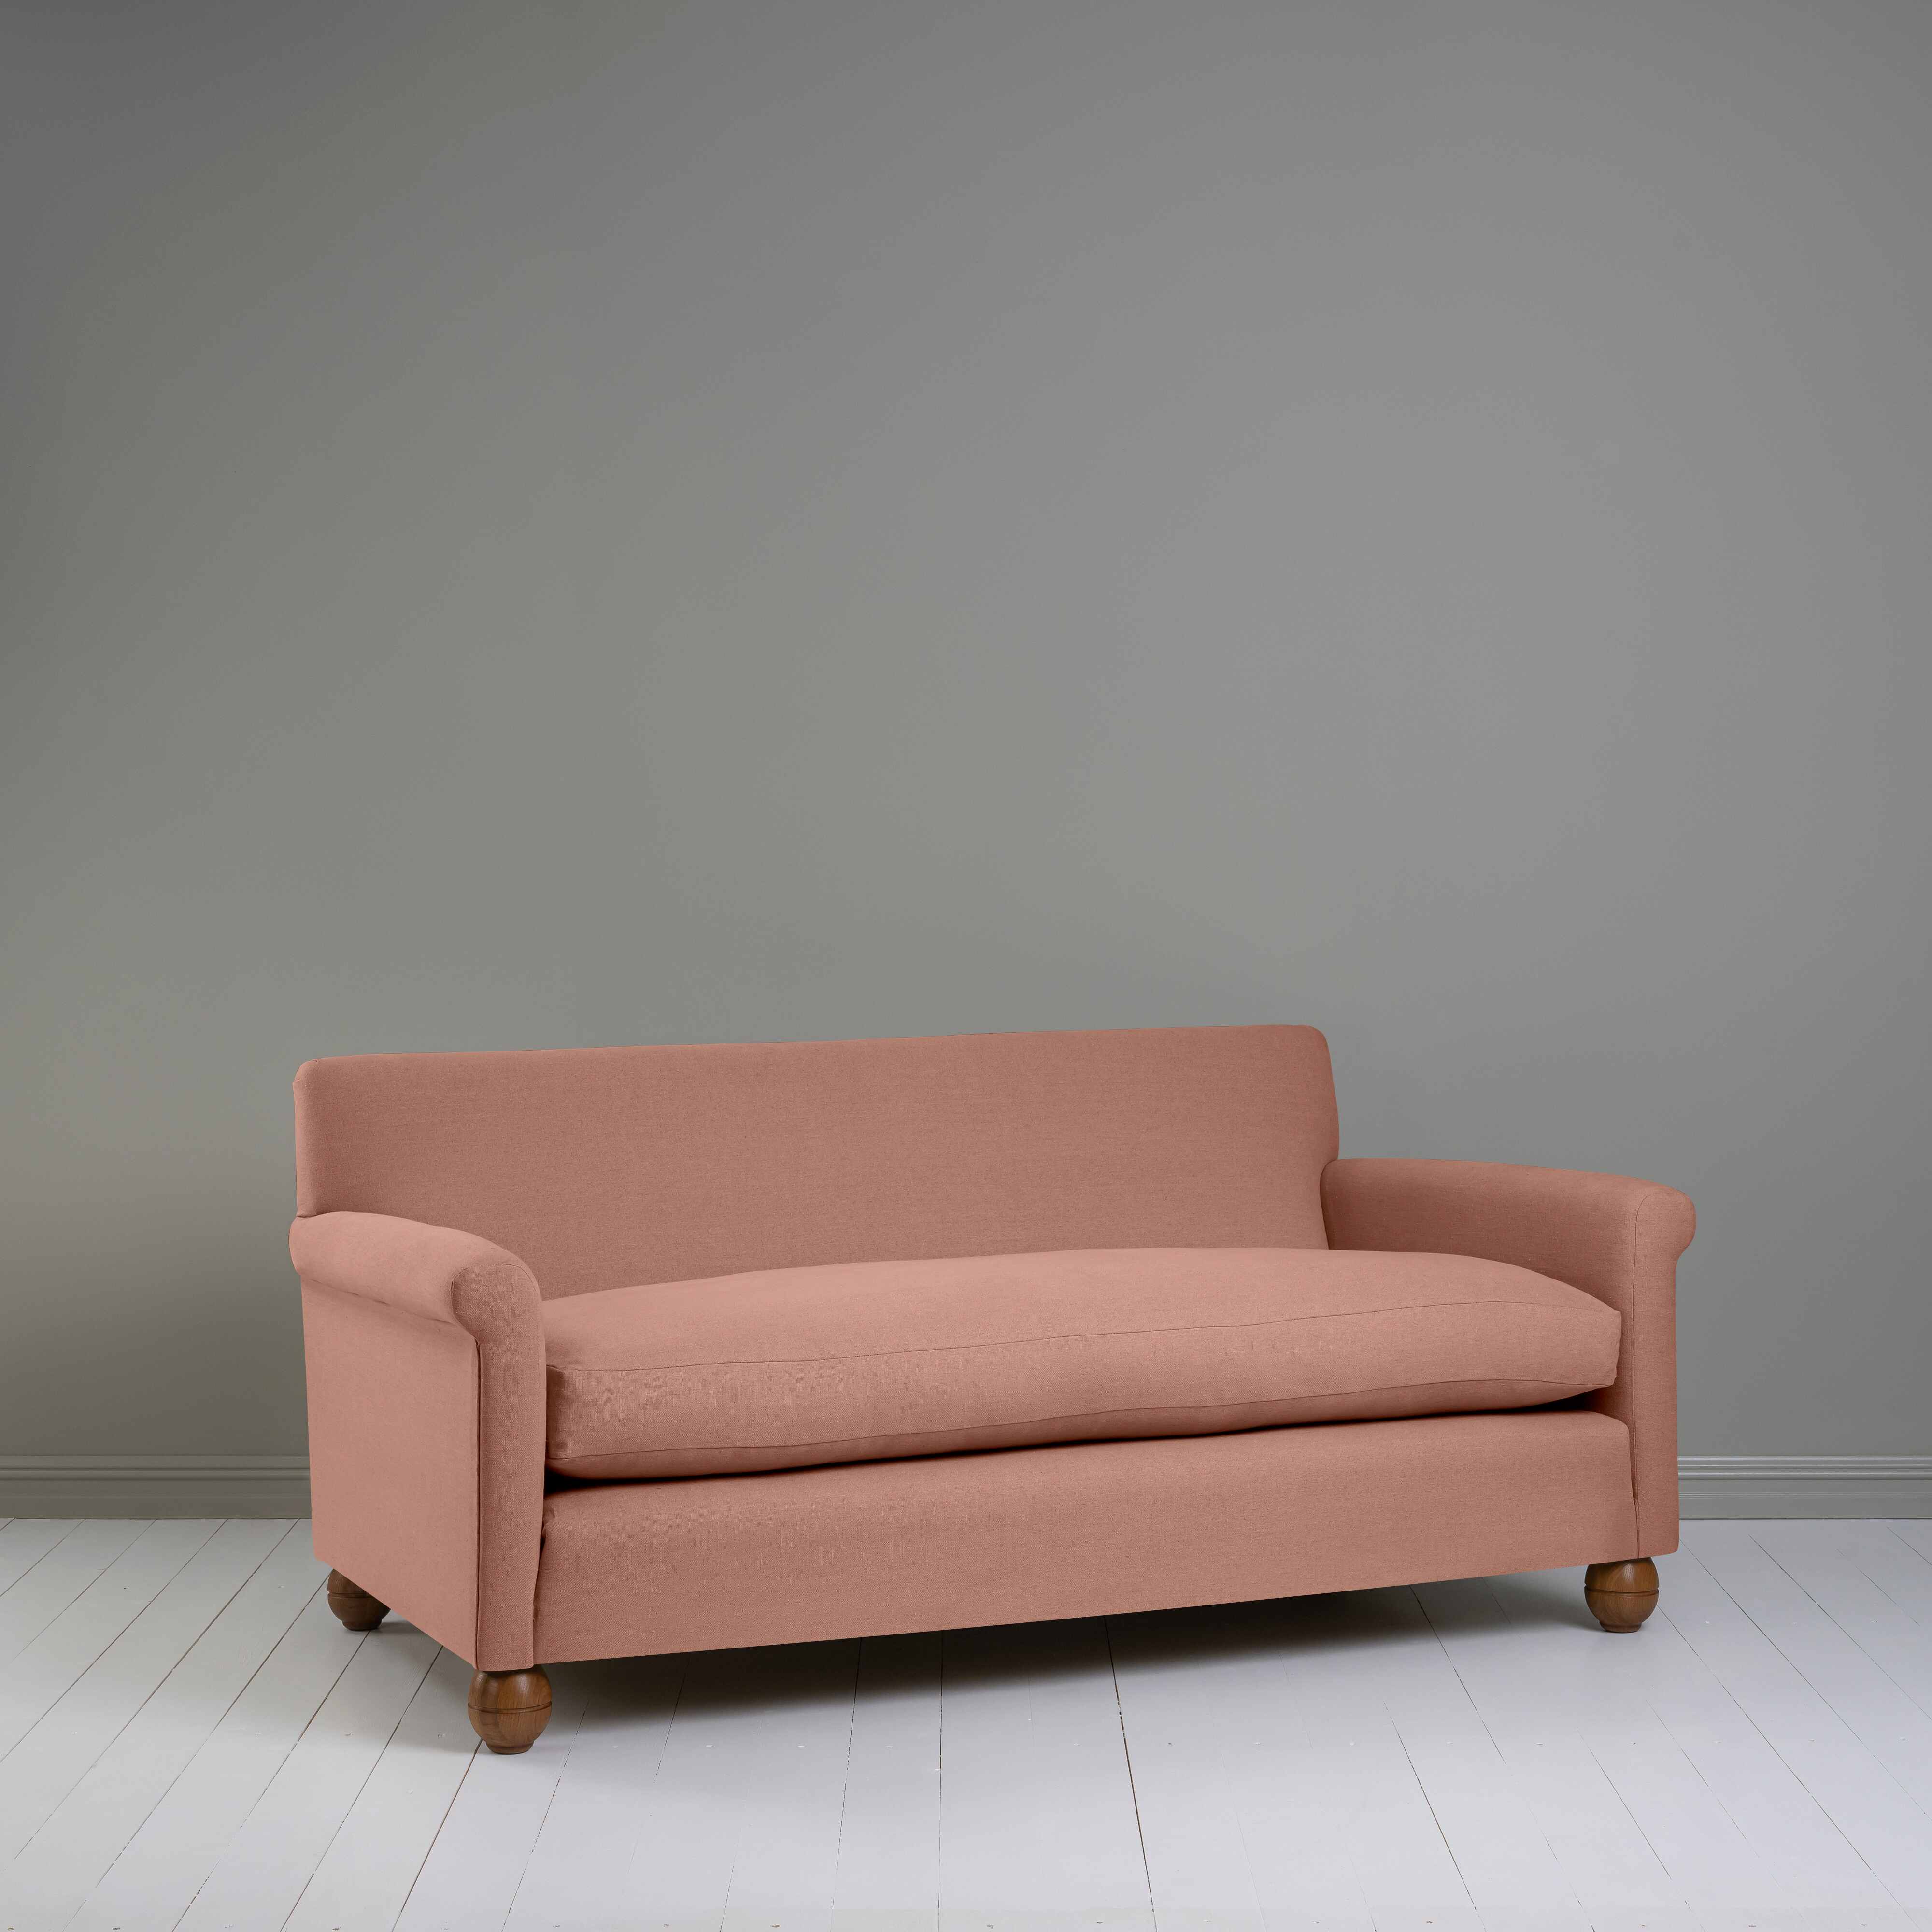  Idler 3 Seater Sofa in Laidback Linen Roseberry 